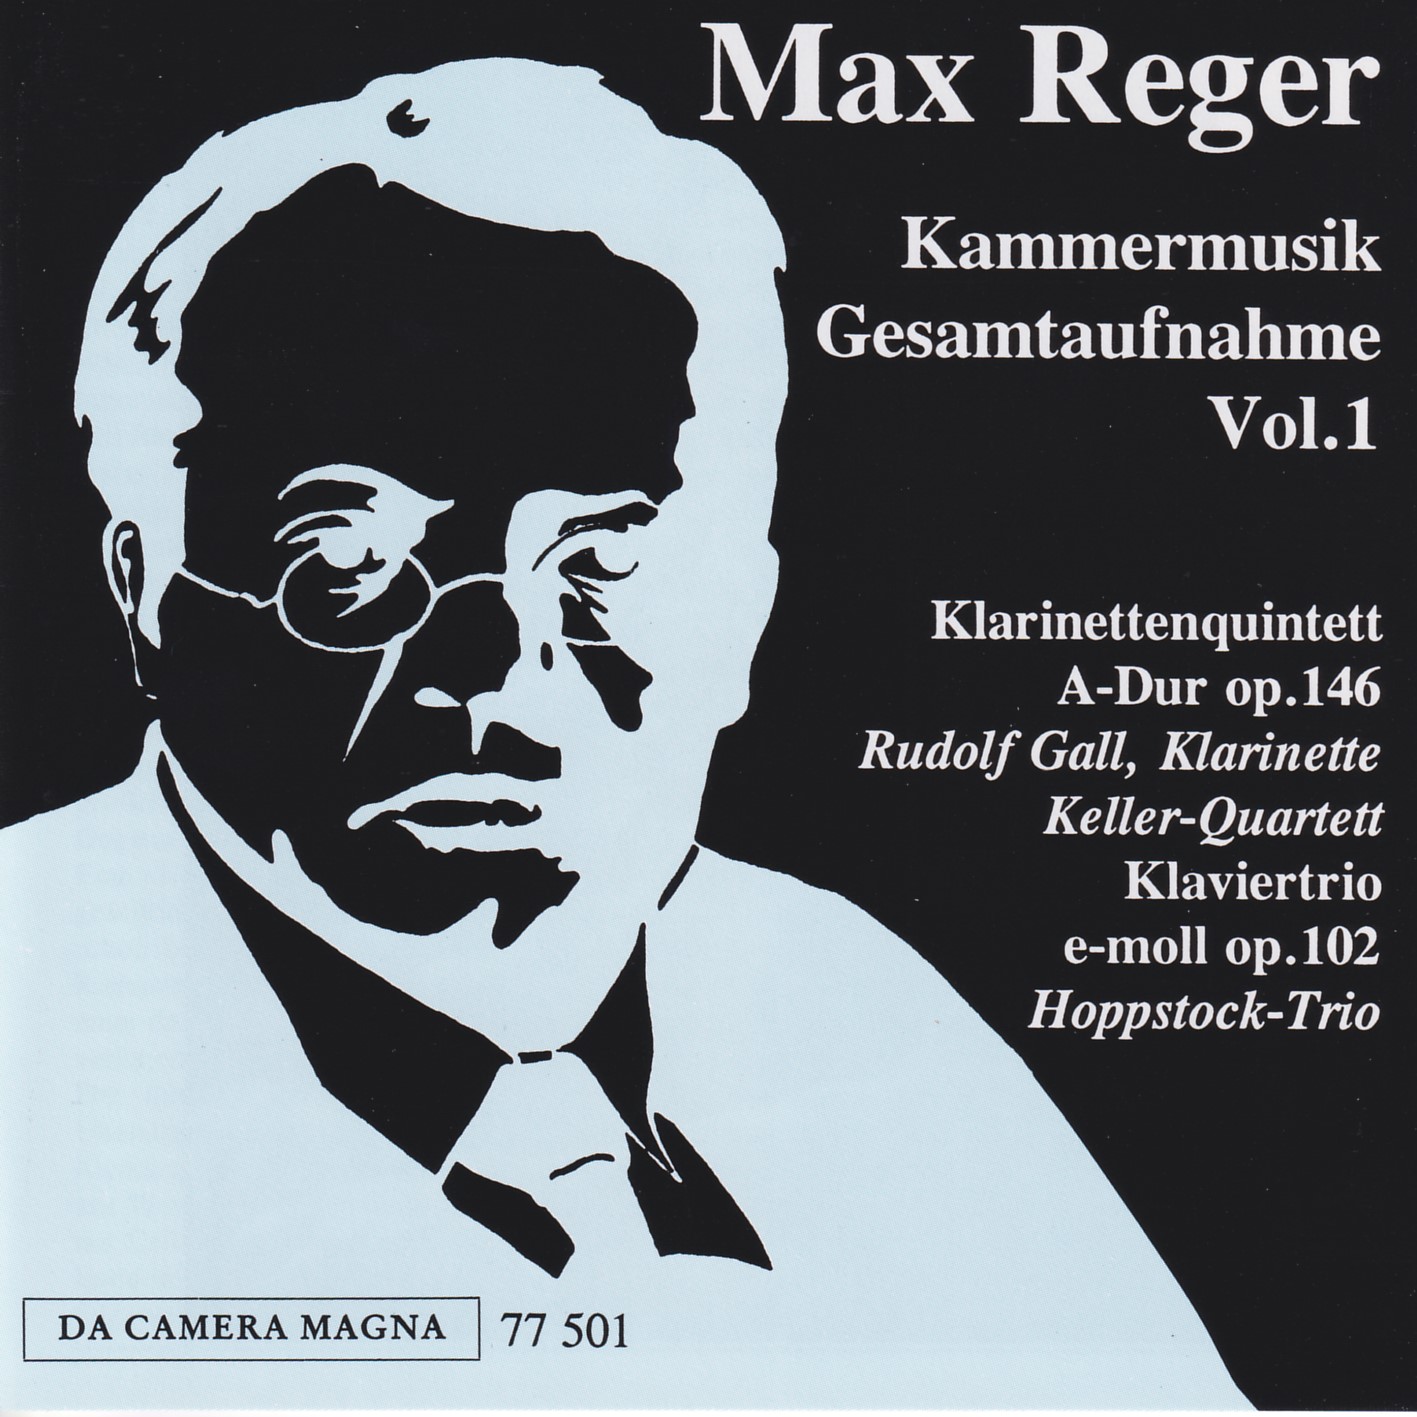 Max Reger - Kammermusik komplett Vol. 1